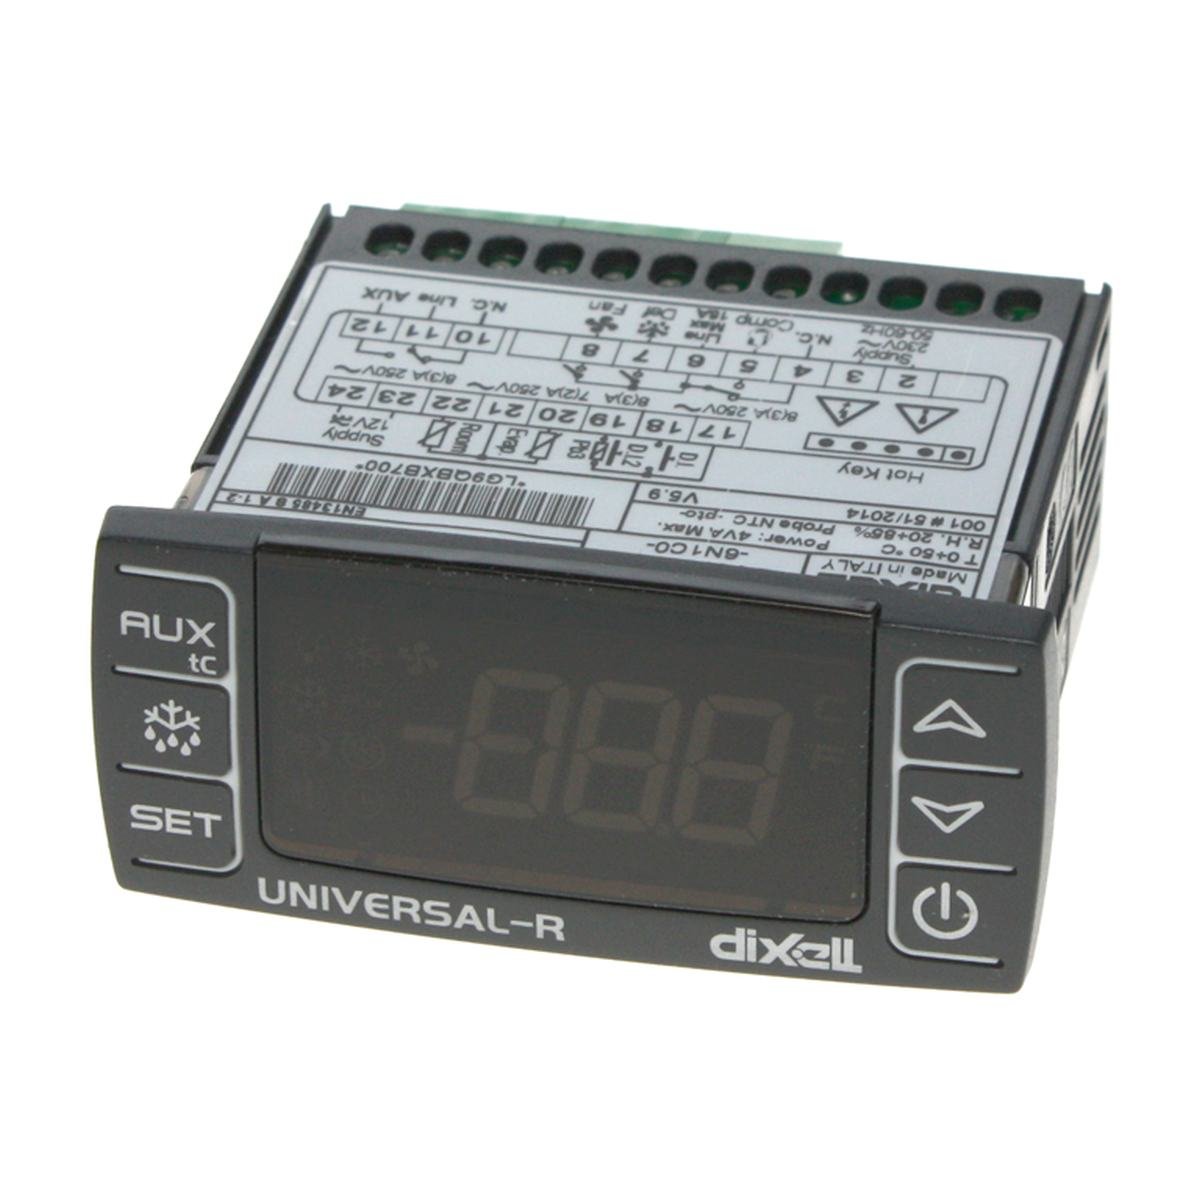 Elektroniskstyring Universal R4-6N1C0 til køl/frys passer til Epgc